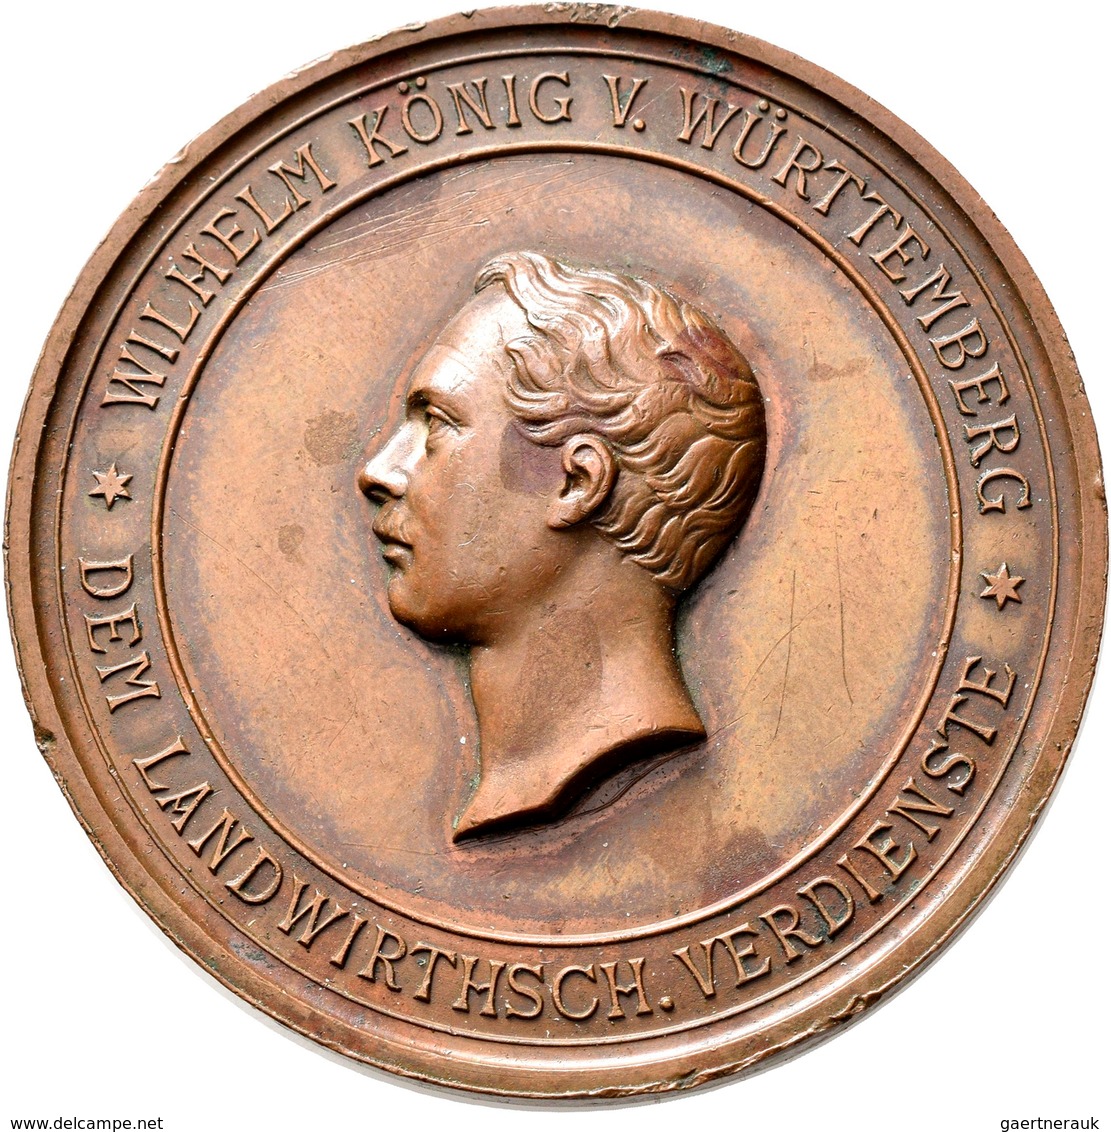 Medaillen Deutschland: Württemberg, Wilhelm I. 1816-1864: Lot 6 Stück; Bronzene Prämienmedaille für